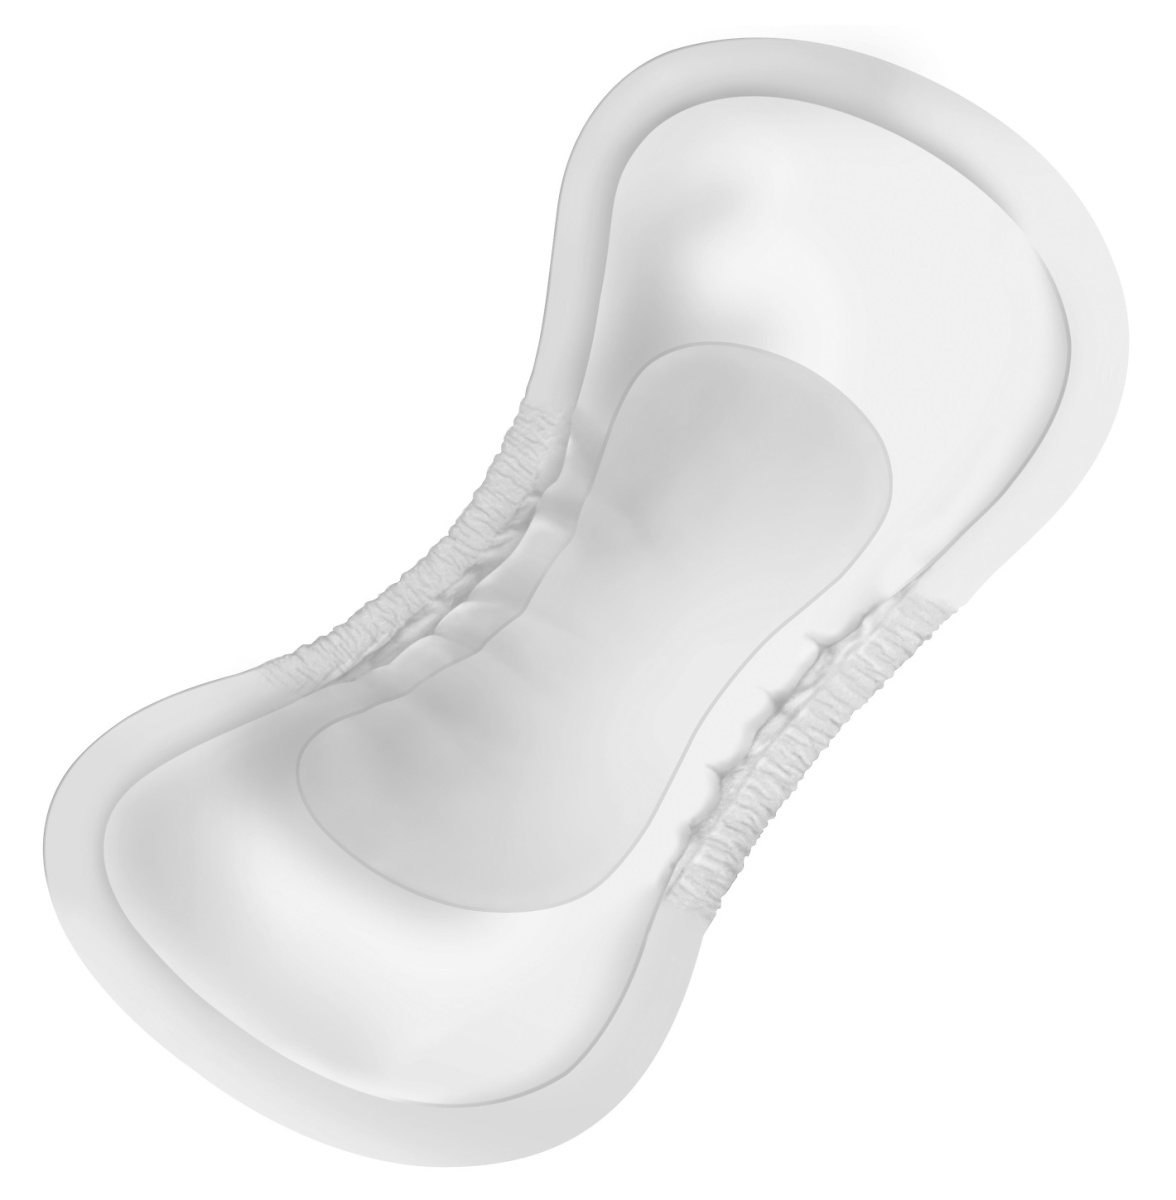 Higiena osób z problemem nietrzymania moczu - MoliCare Premium lady pad